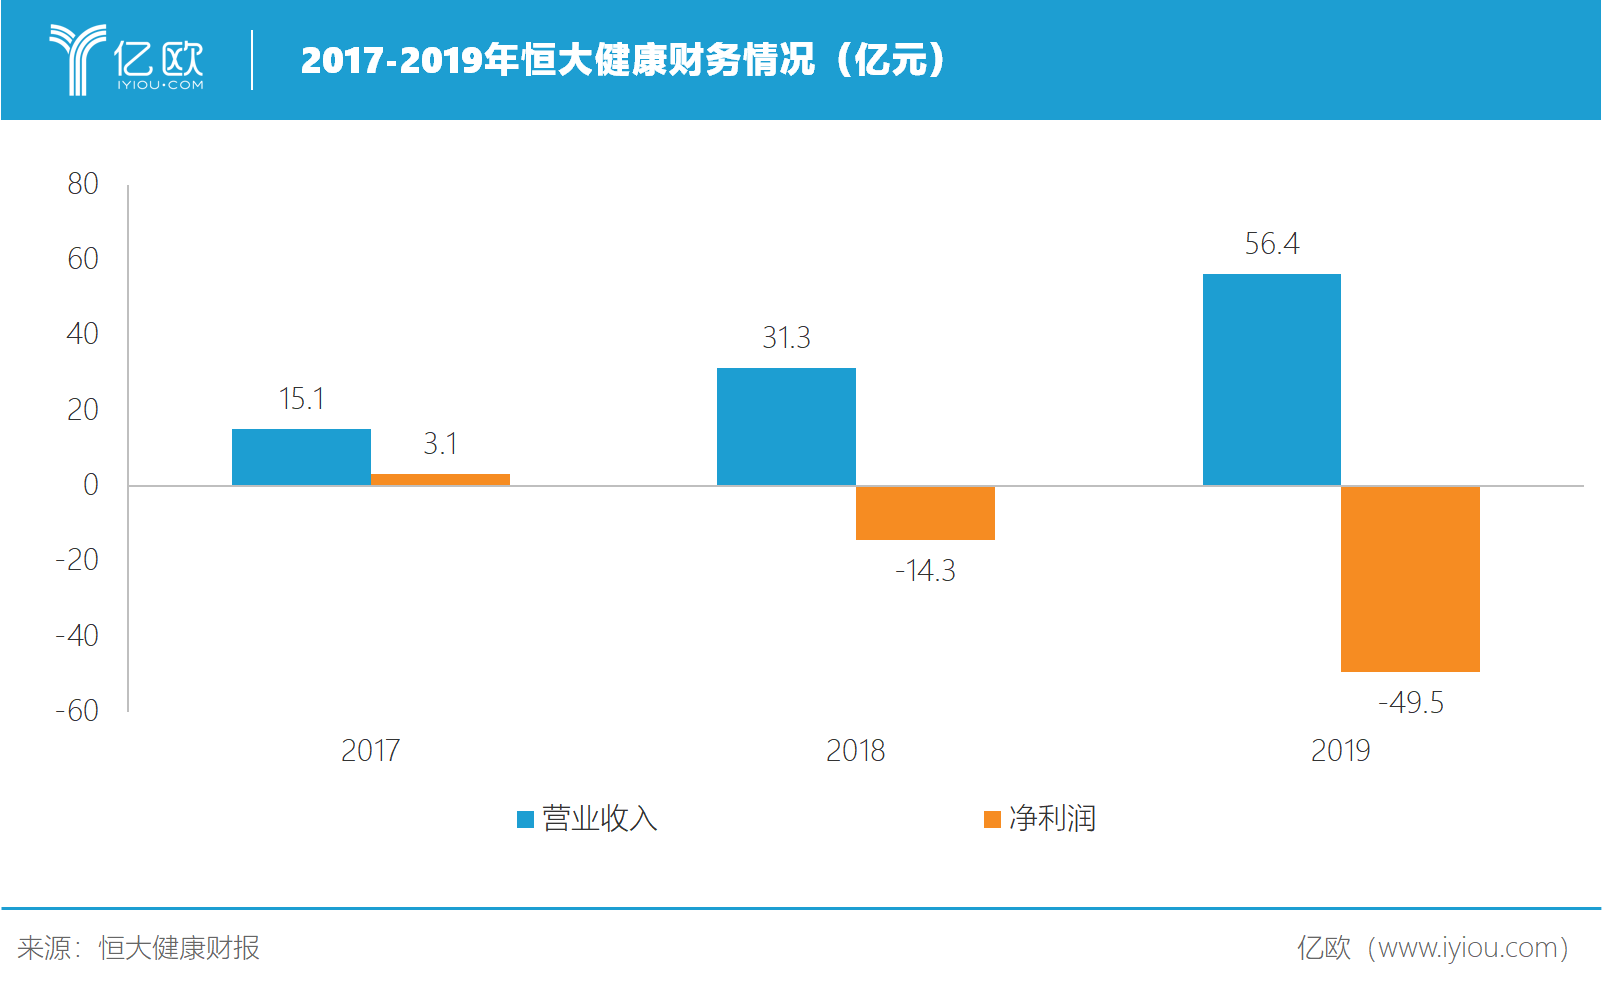 2017-2019年恒大健康财务情况（亿元）